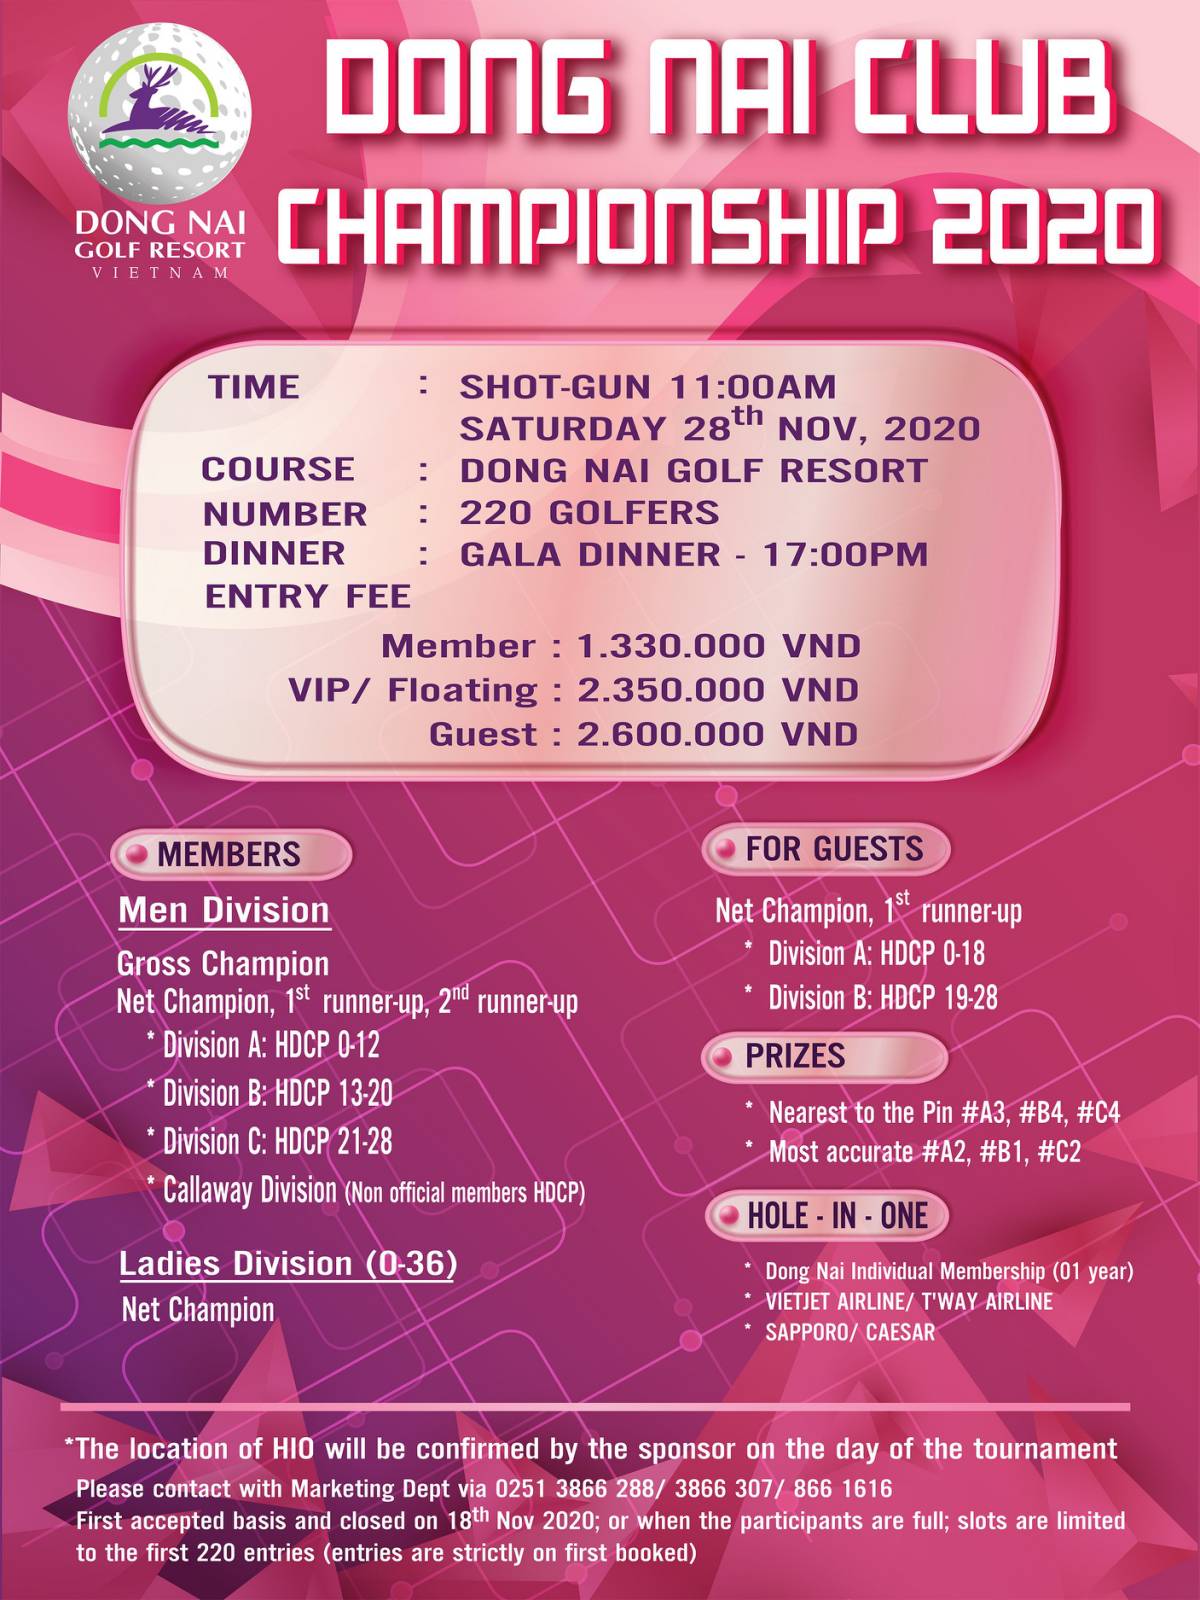 Dong Nai Club Championship 2020 chuẩn bị khởi tranh